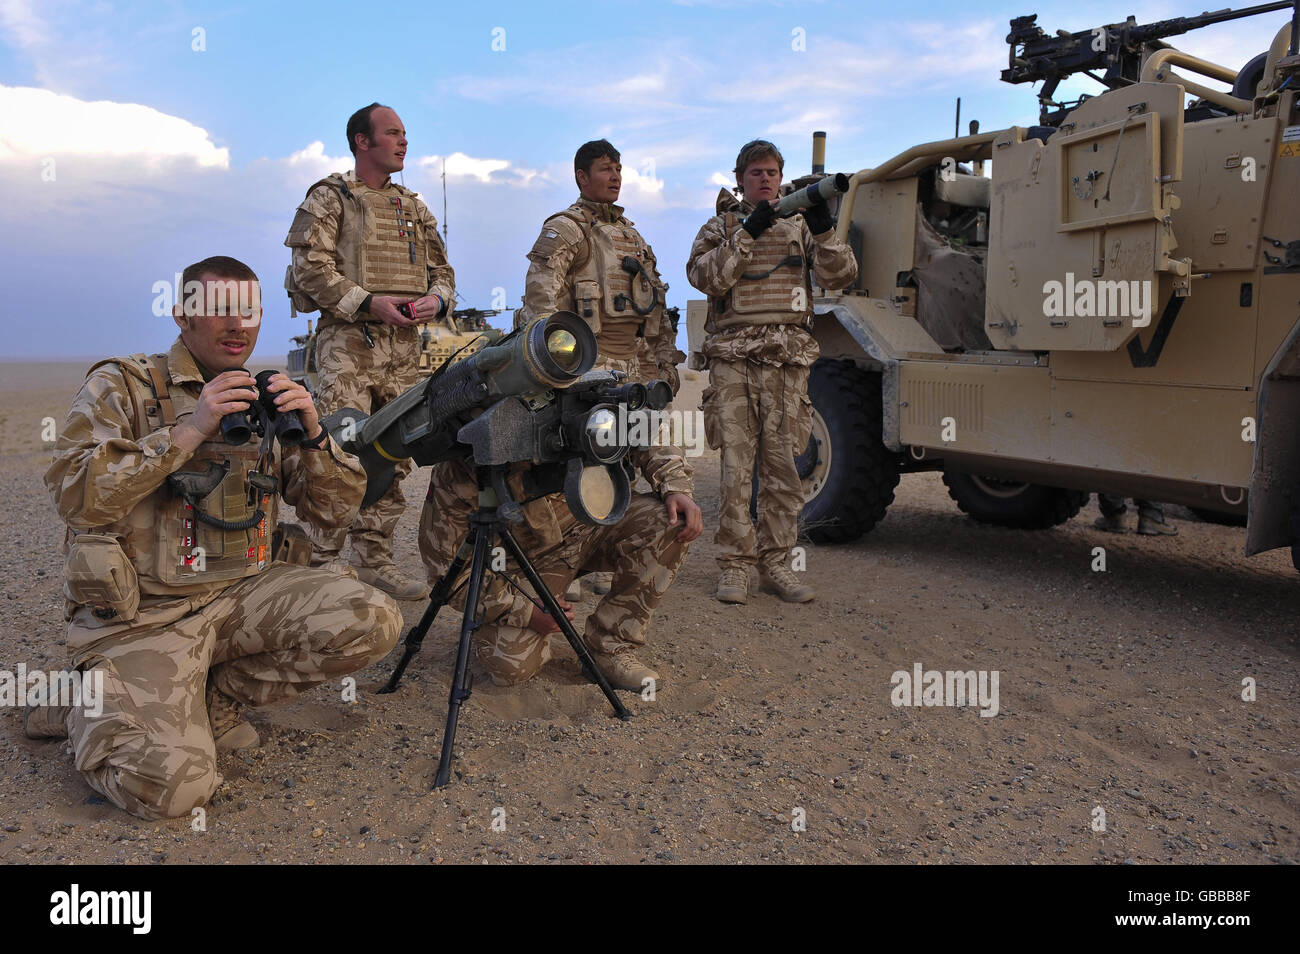 Les troupes du 1er les gardes dragons du Queens préparent un système de missiles Javelin en prévision de la localisation positive des forces ennemies dans une lutte contre le feu entre les Taliban et l'Armée nationale afghane dans la région de Nawa dans la province d'Helmand, près du désert oriental. Banque D'Images